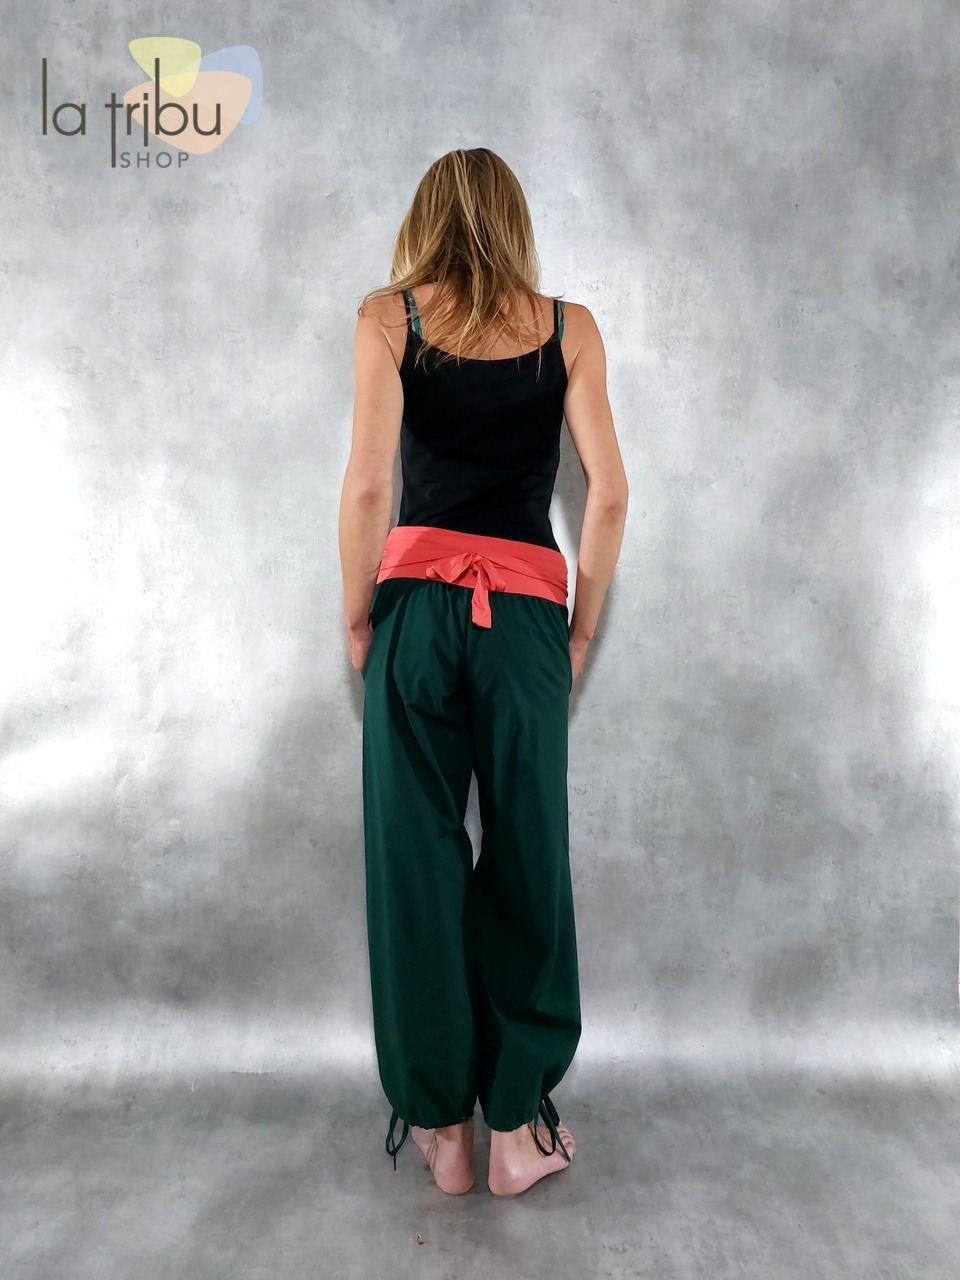 Beau pantalon de yoga vert marque Khaliyog